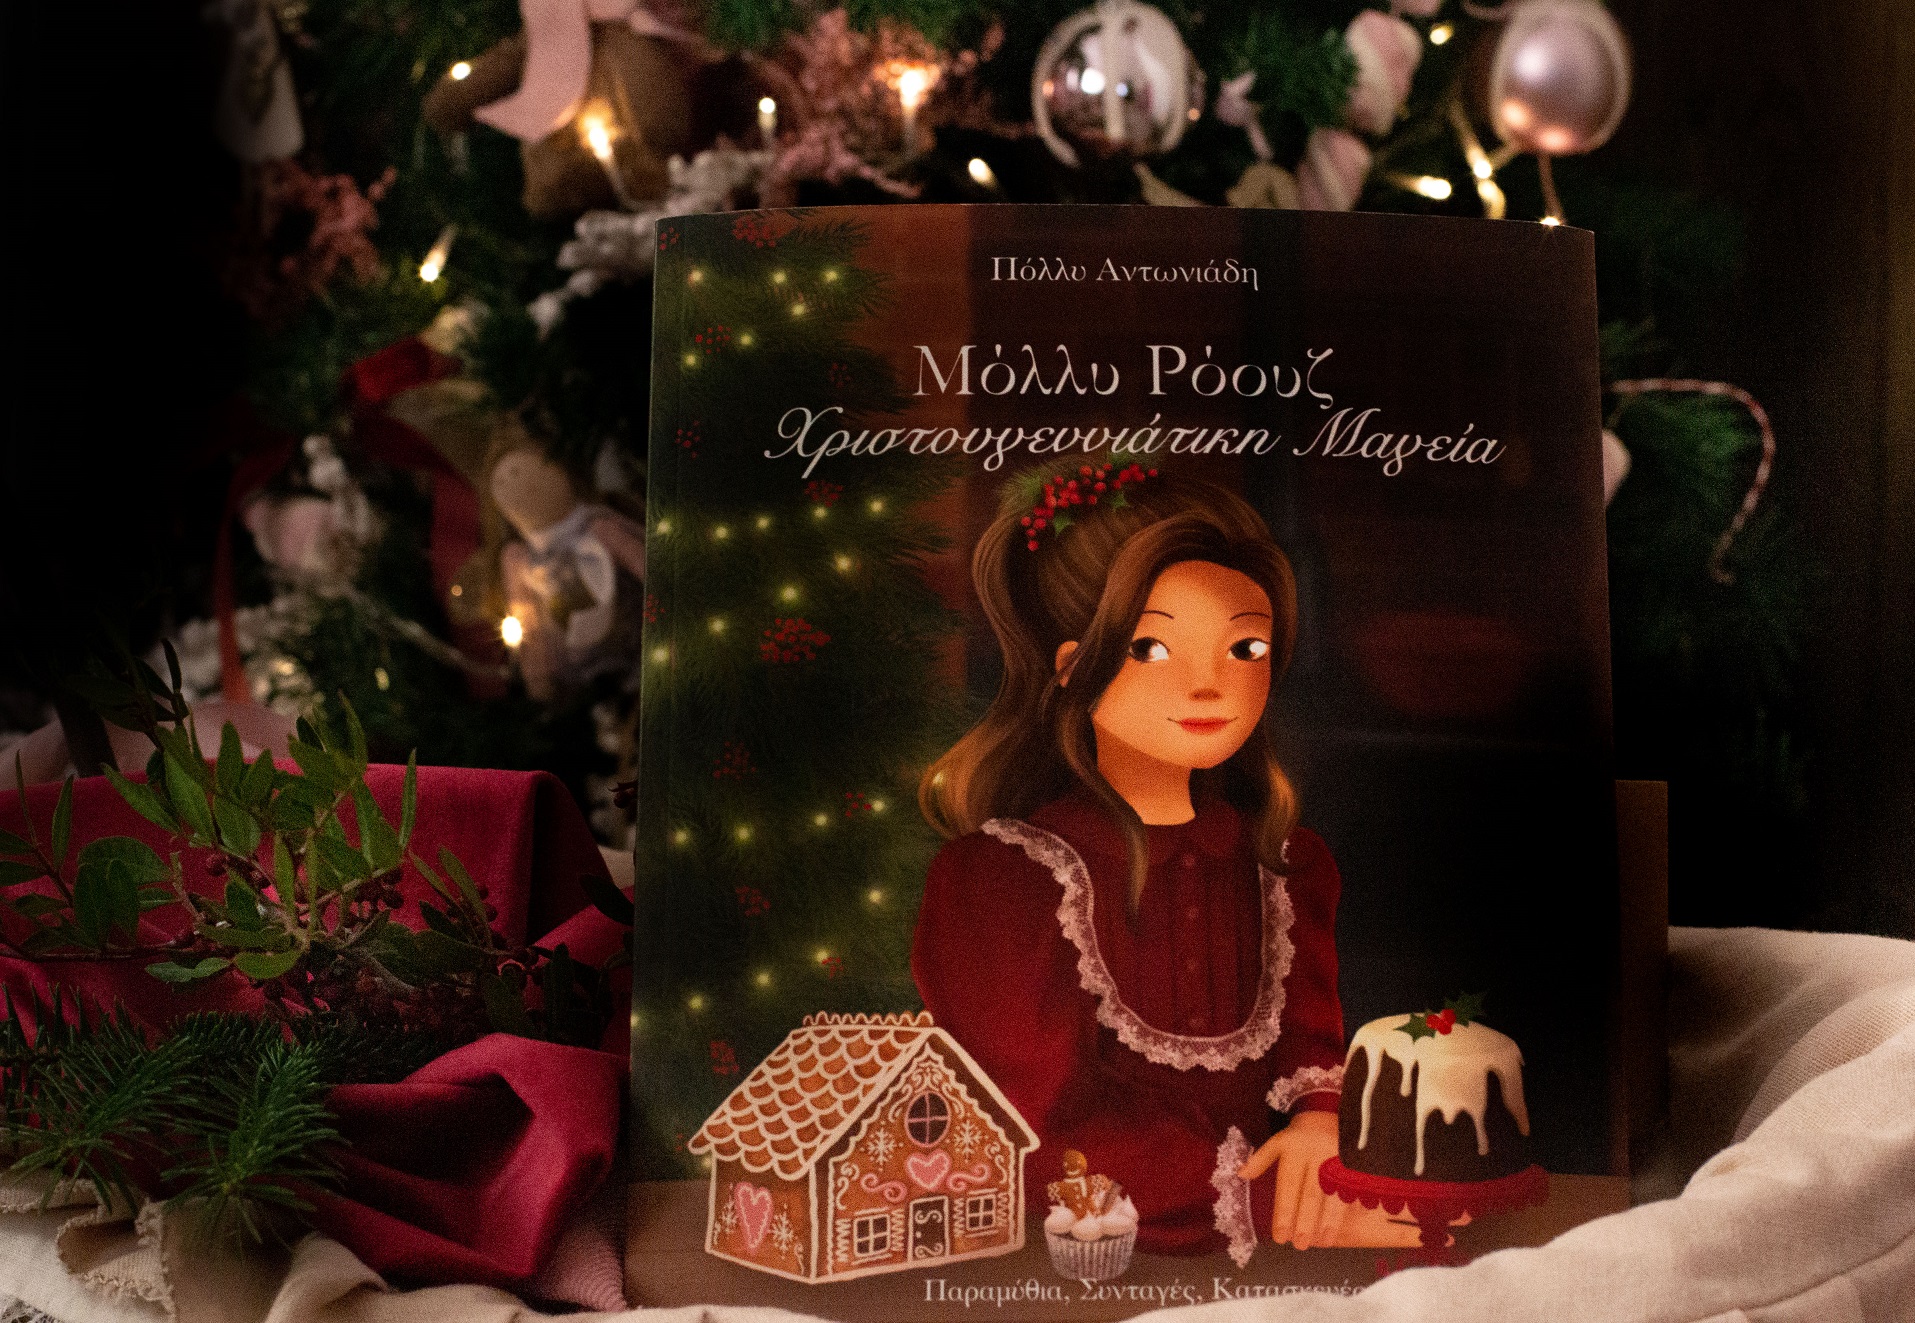 Πόλλυ Αντωνιάδη: Η συγγραφέας που μαθαίνει στα παιδιά να αγαπούν τη ζαχαροπλαστική μιλά στο TheMamagers για τη μαγεία των Χριστουγέννων